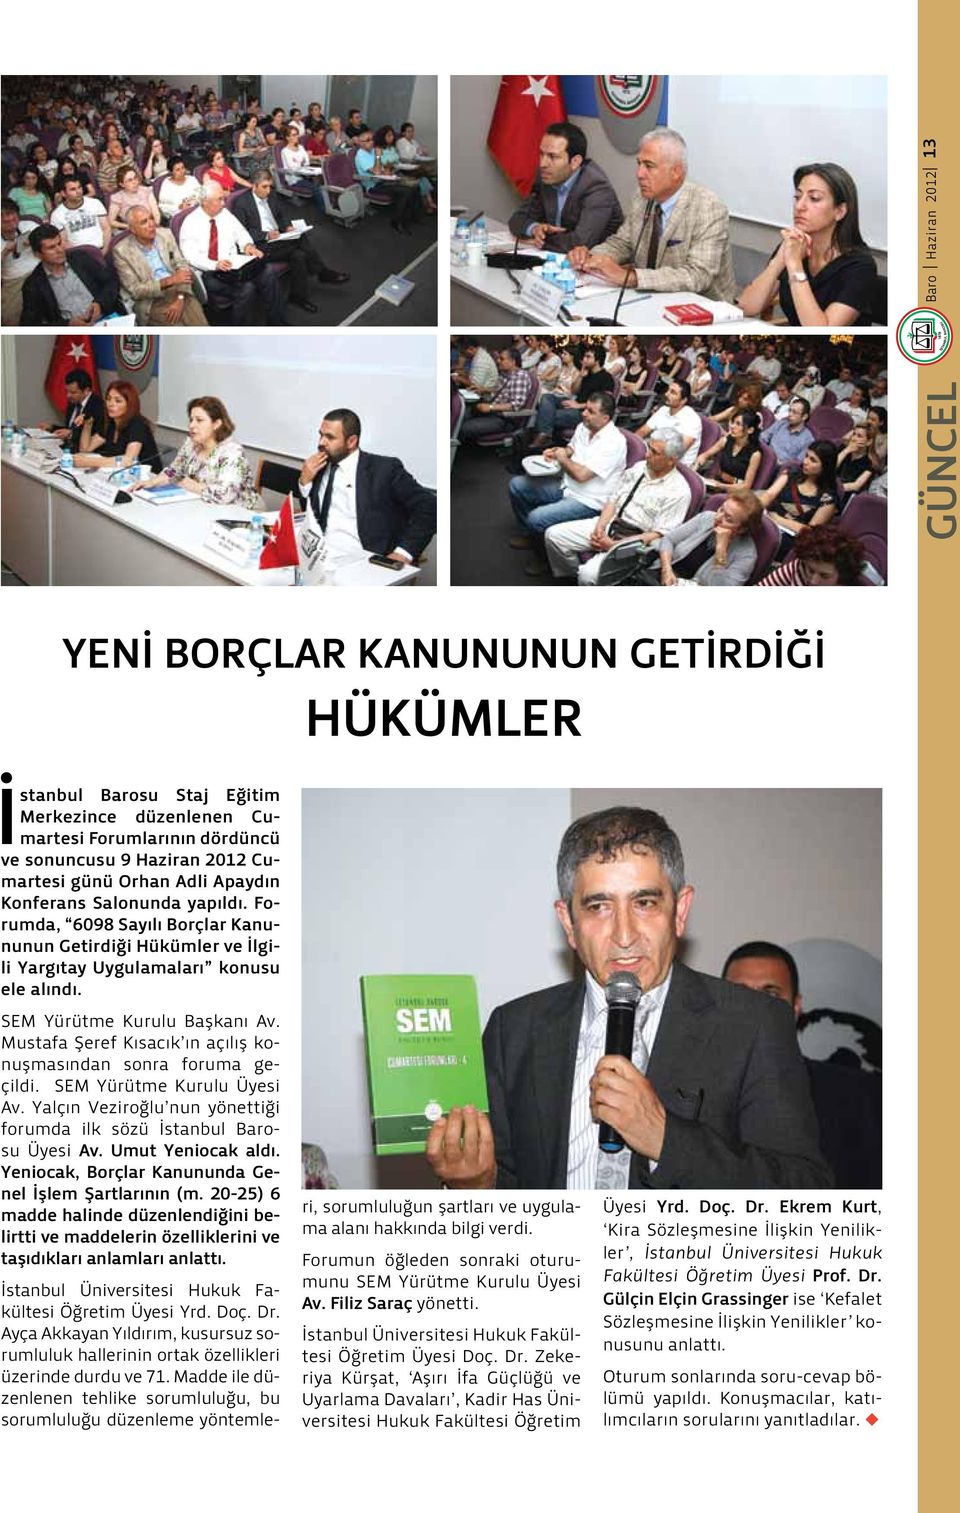 Mustafa Şeref Kısacık ın açılış konuşmasından sonra foruma geçildi. SEM Yürütme Kurulu Üyesi Av. Yalçın Veziroğlu nun yönettiği forumda ilk sözü İstanbul Barosu Üyesi Av. Umut Yeniocak aldı.